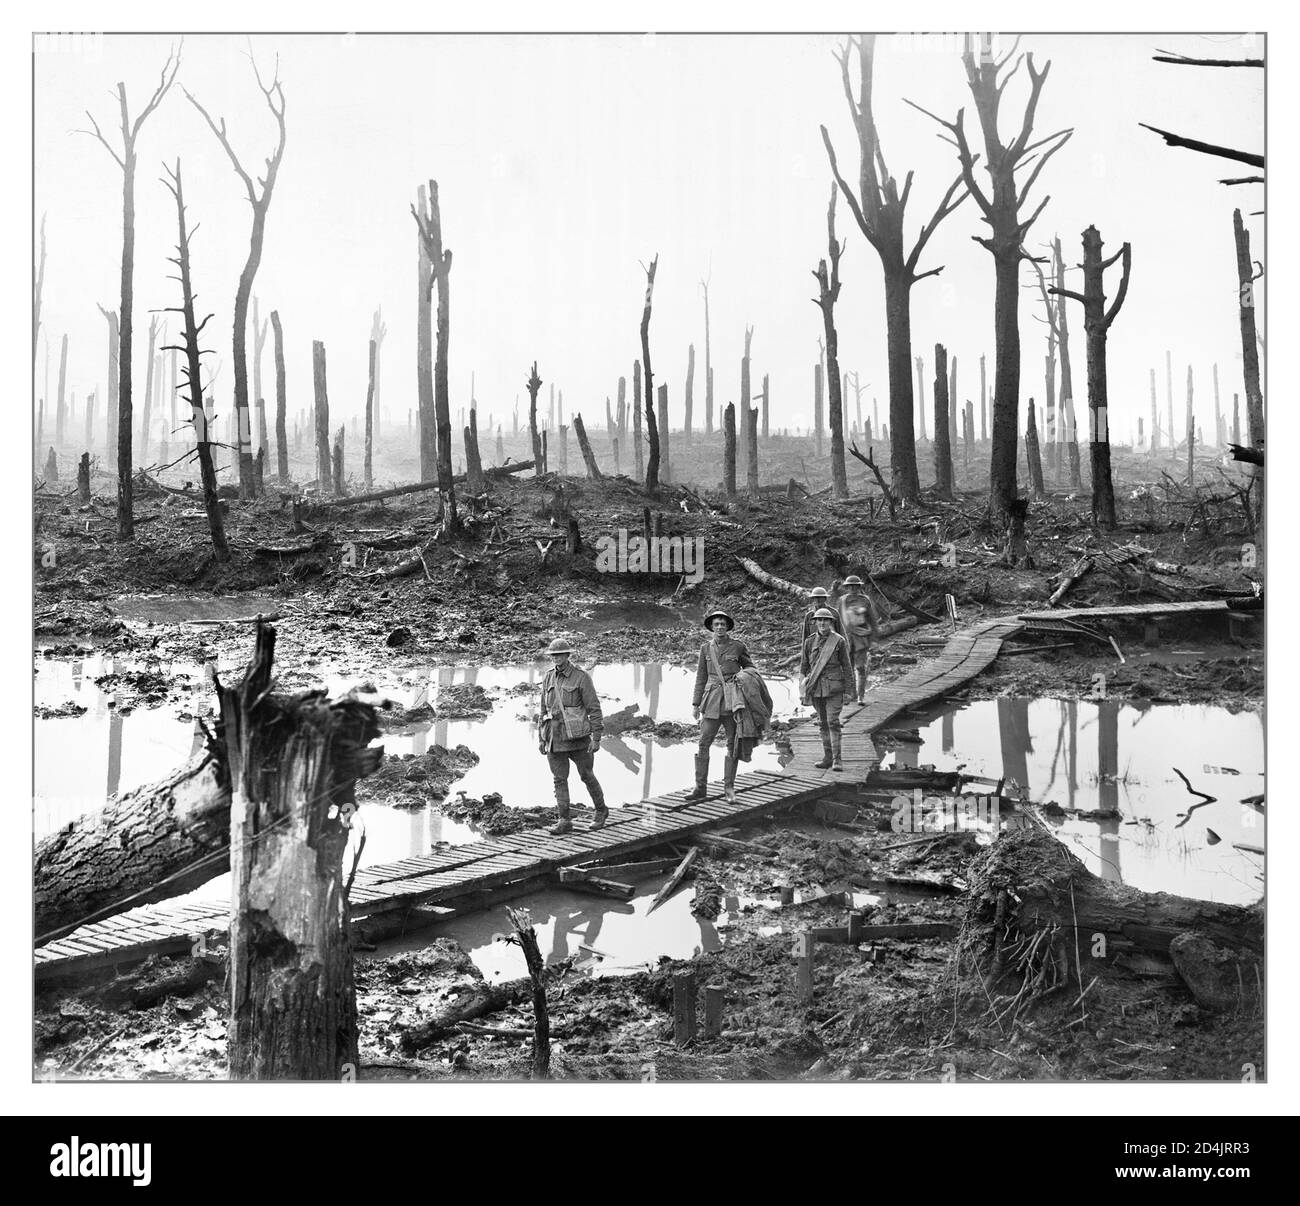 Archiv SCHLACHTFELD PASSCHENDAELE NACH dem 1. Weltkrieg 12. Oktober 1917 die 3. Australische Division und die Neuseeländer, unterstützt von der 4. Australischen Division, wurden gegen das Dorf Passchendaele gestartet. Das Wetter hatte das Schlachtfeld in Schlamm verwandelt. Artillerieunterstützung schwach; Geschosse explodierten harmlos im Schlamm, zerschnitten weder den Stacheldraht des Feindes, noch verstummten sie die Geschütze. Die Neuseeländer kämpften über 2,300 Meter Schlamm, um von Maschinengewehren geschlachtet zu werden. Die Australier erreichten den Rand von Passchendaele, wurden aber mit zunehmenden Verlusten gezwungen, sich zurückzuziehen. Der Angriff war eine Katastrophe. Stockfoto